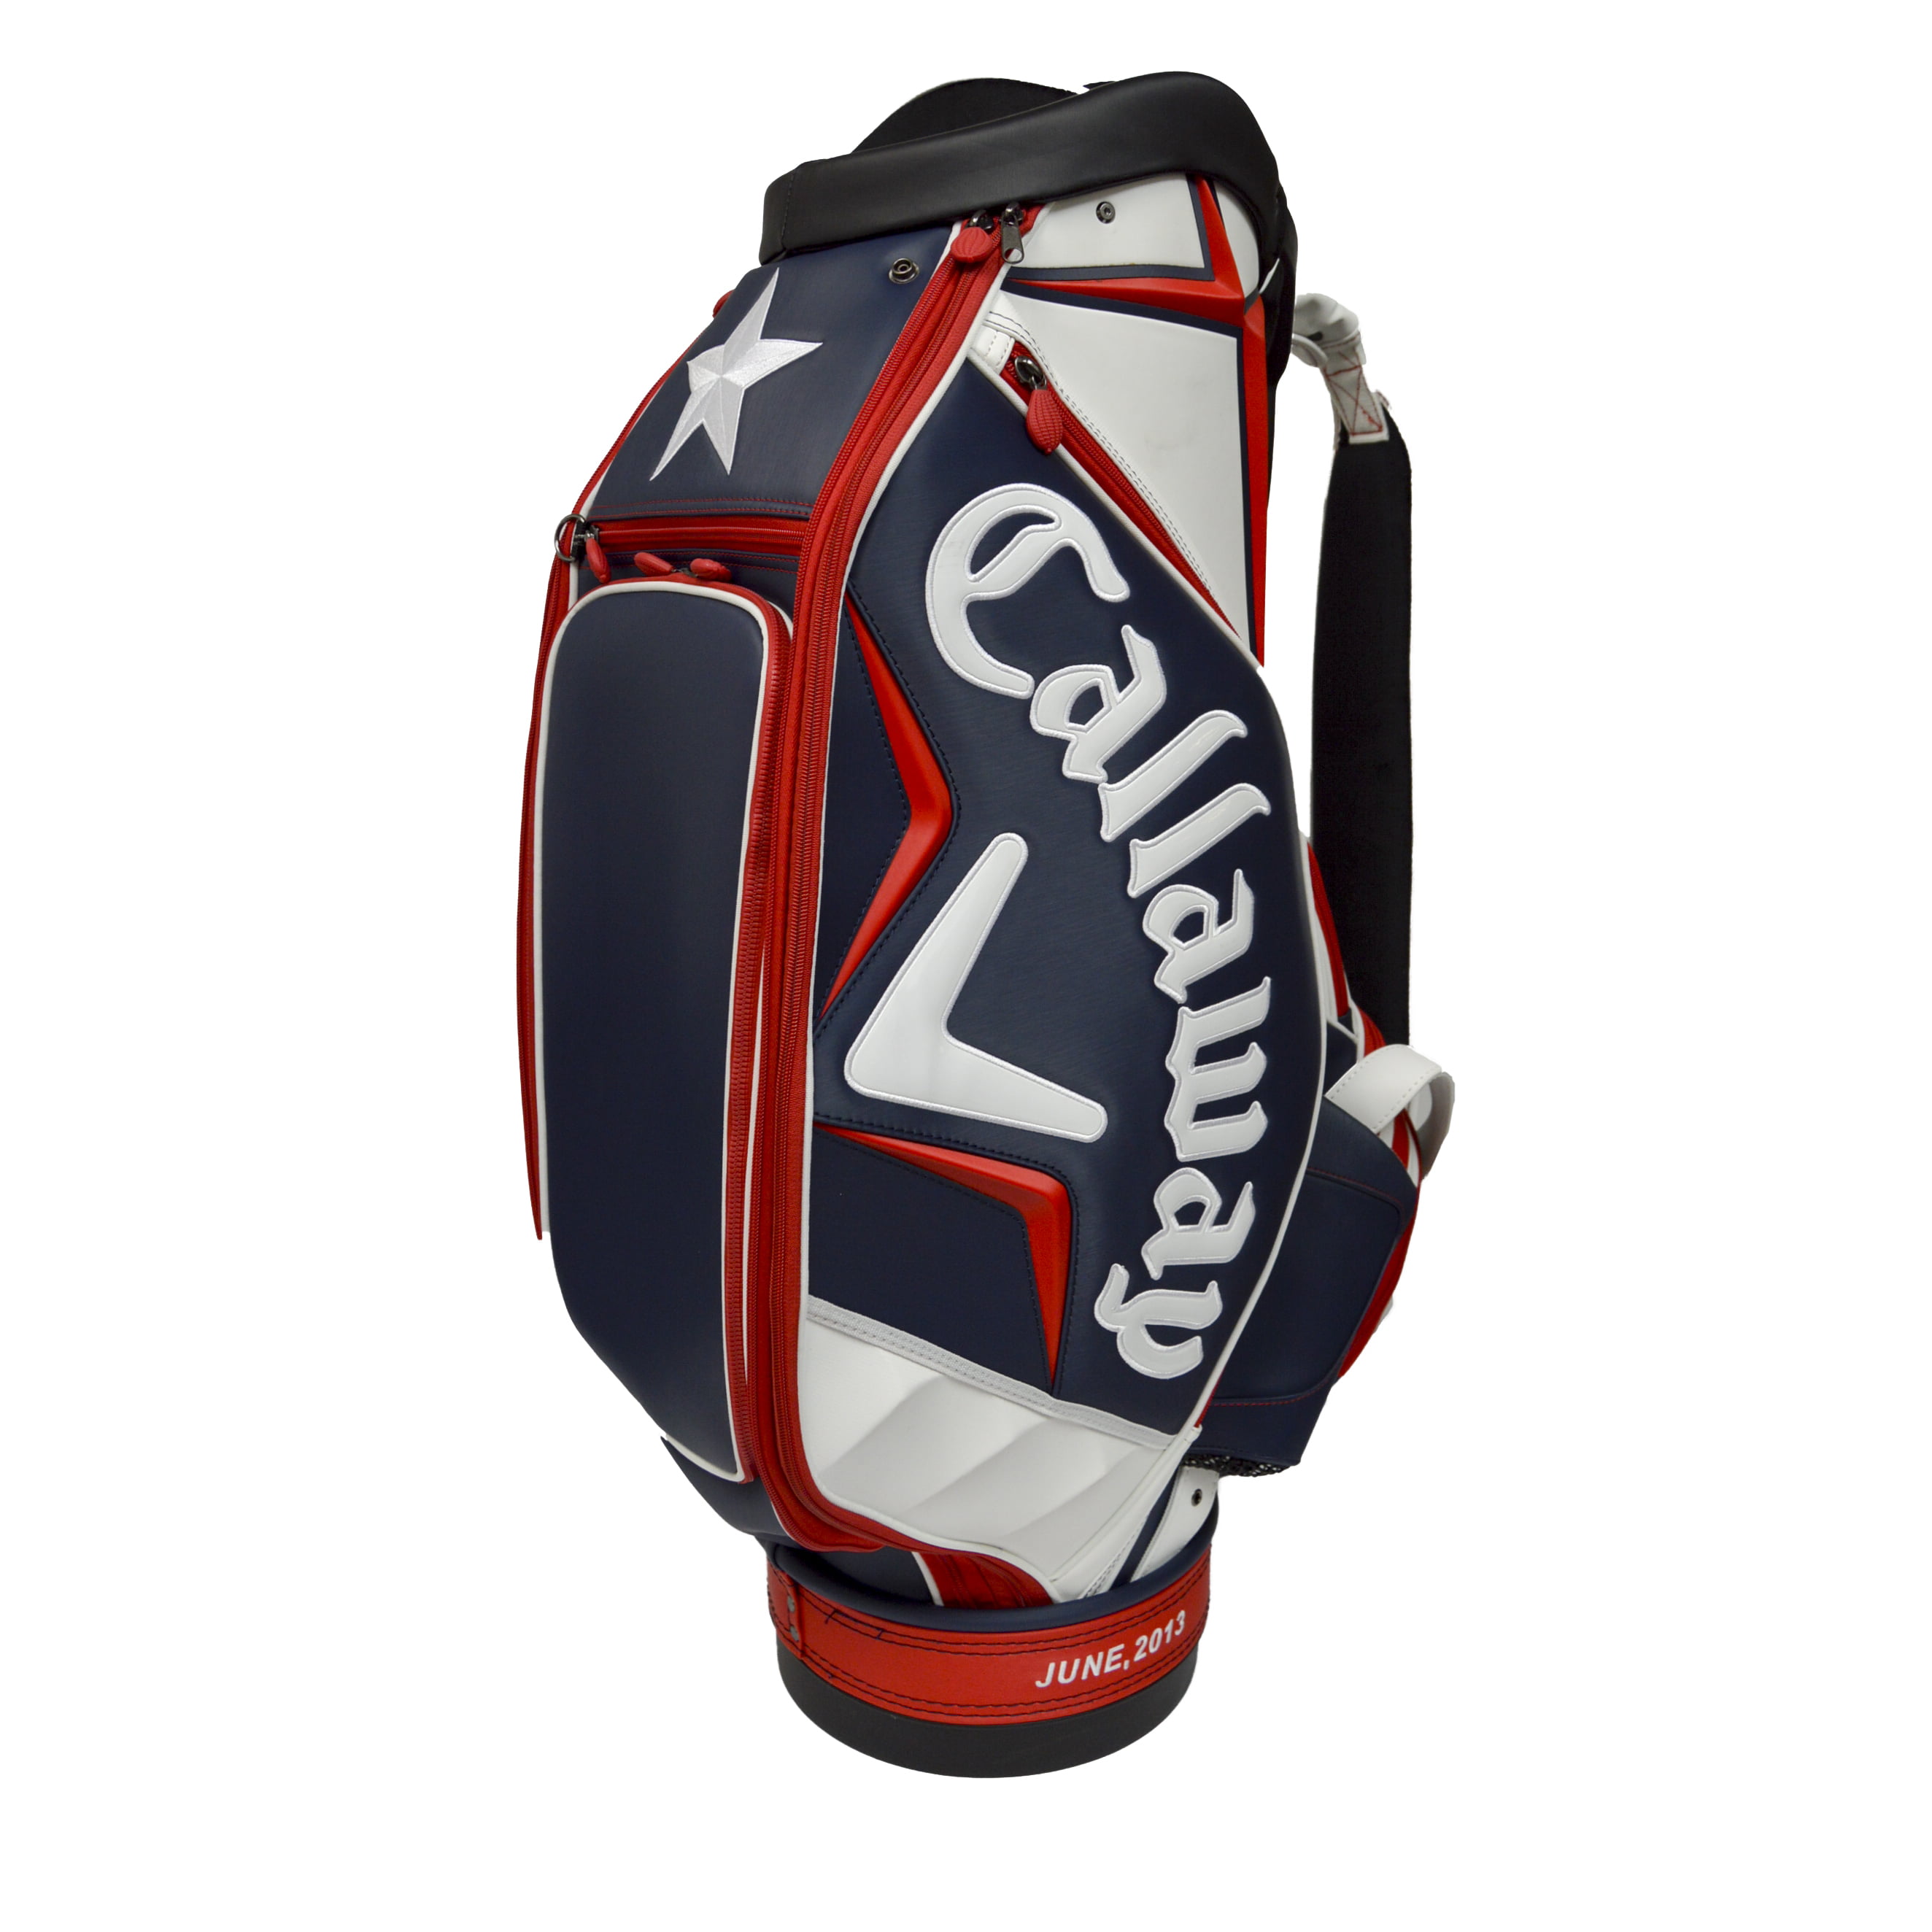 Callaway Golf Men's US Open Staff Bag White/Blue/Red - Walmart.com ...